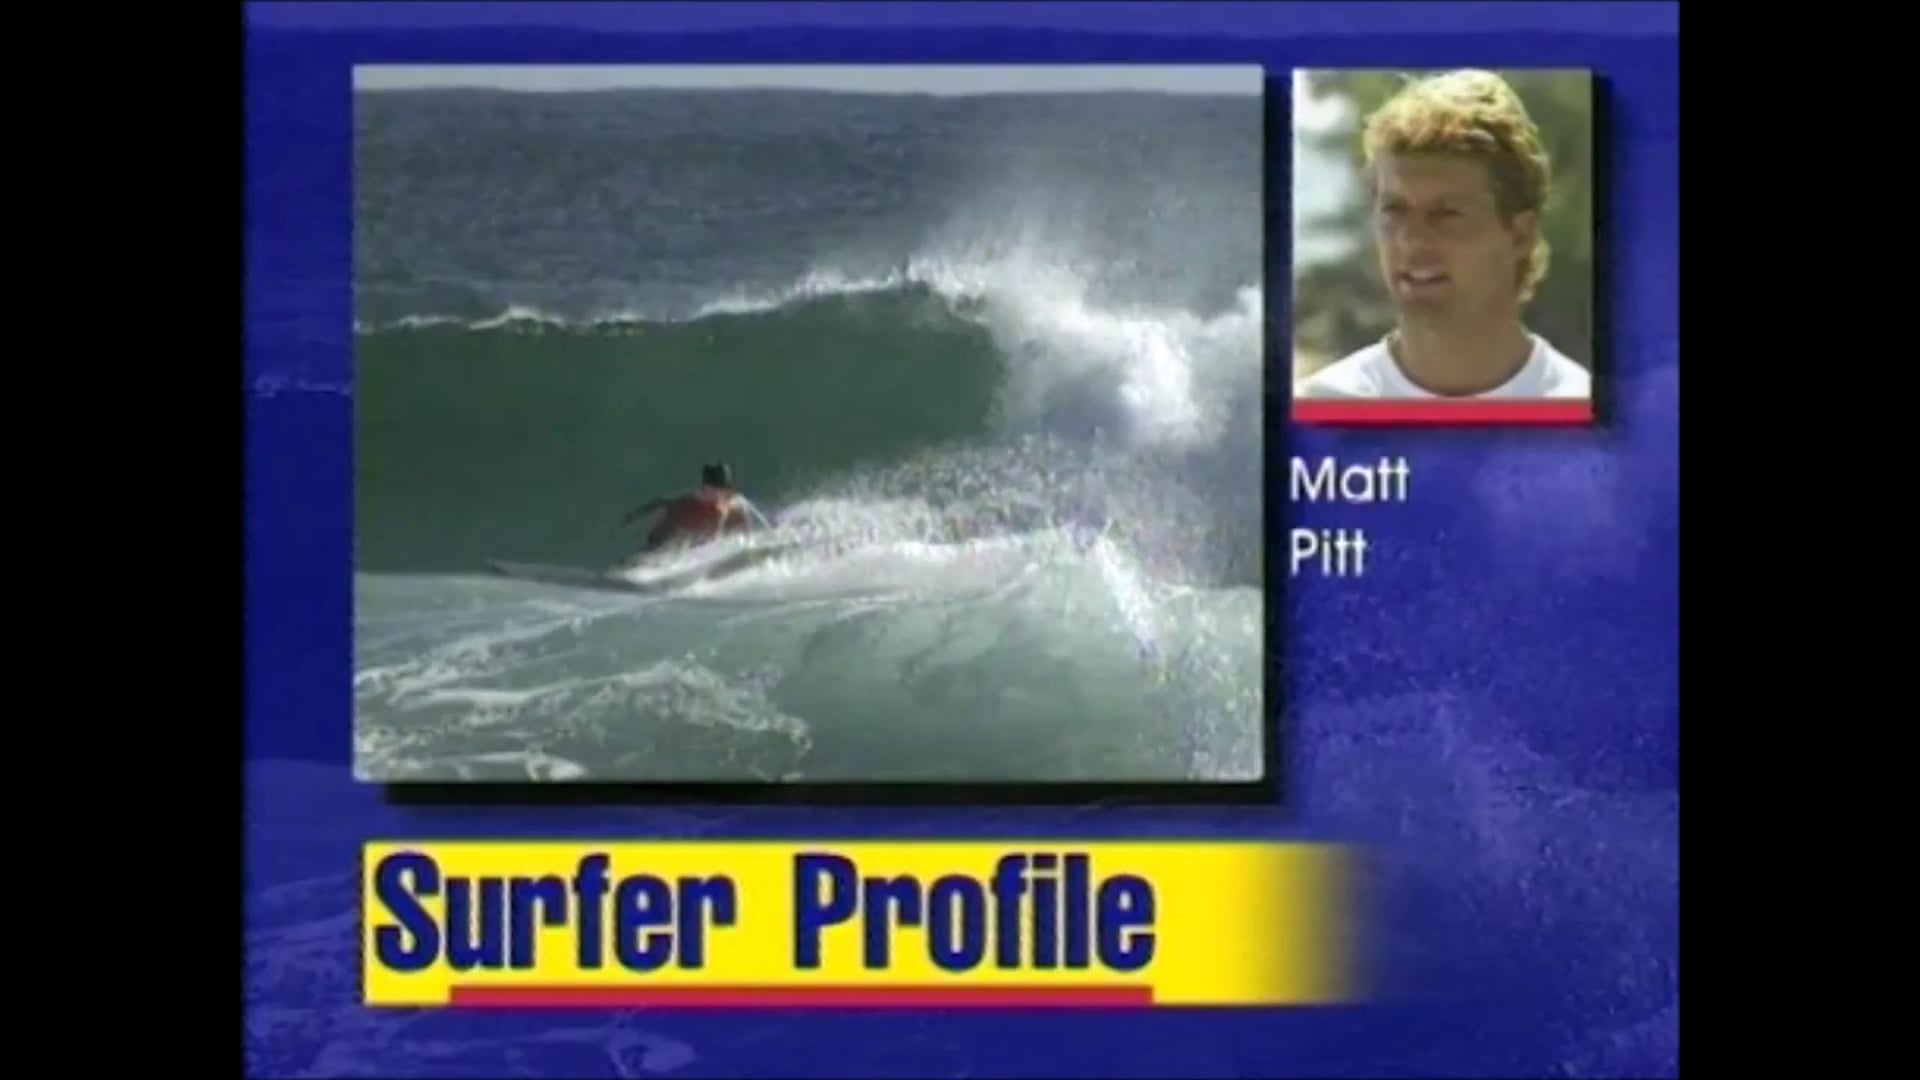 Matt Pitt – April 1996